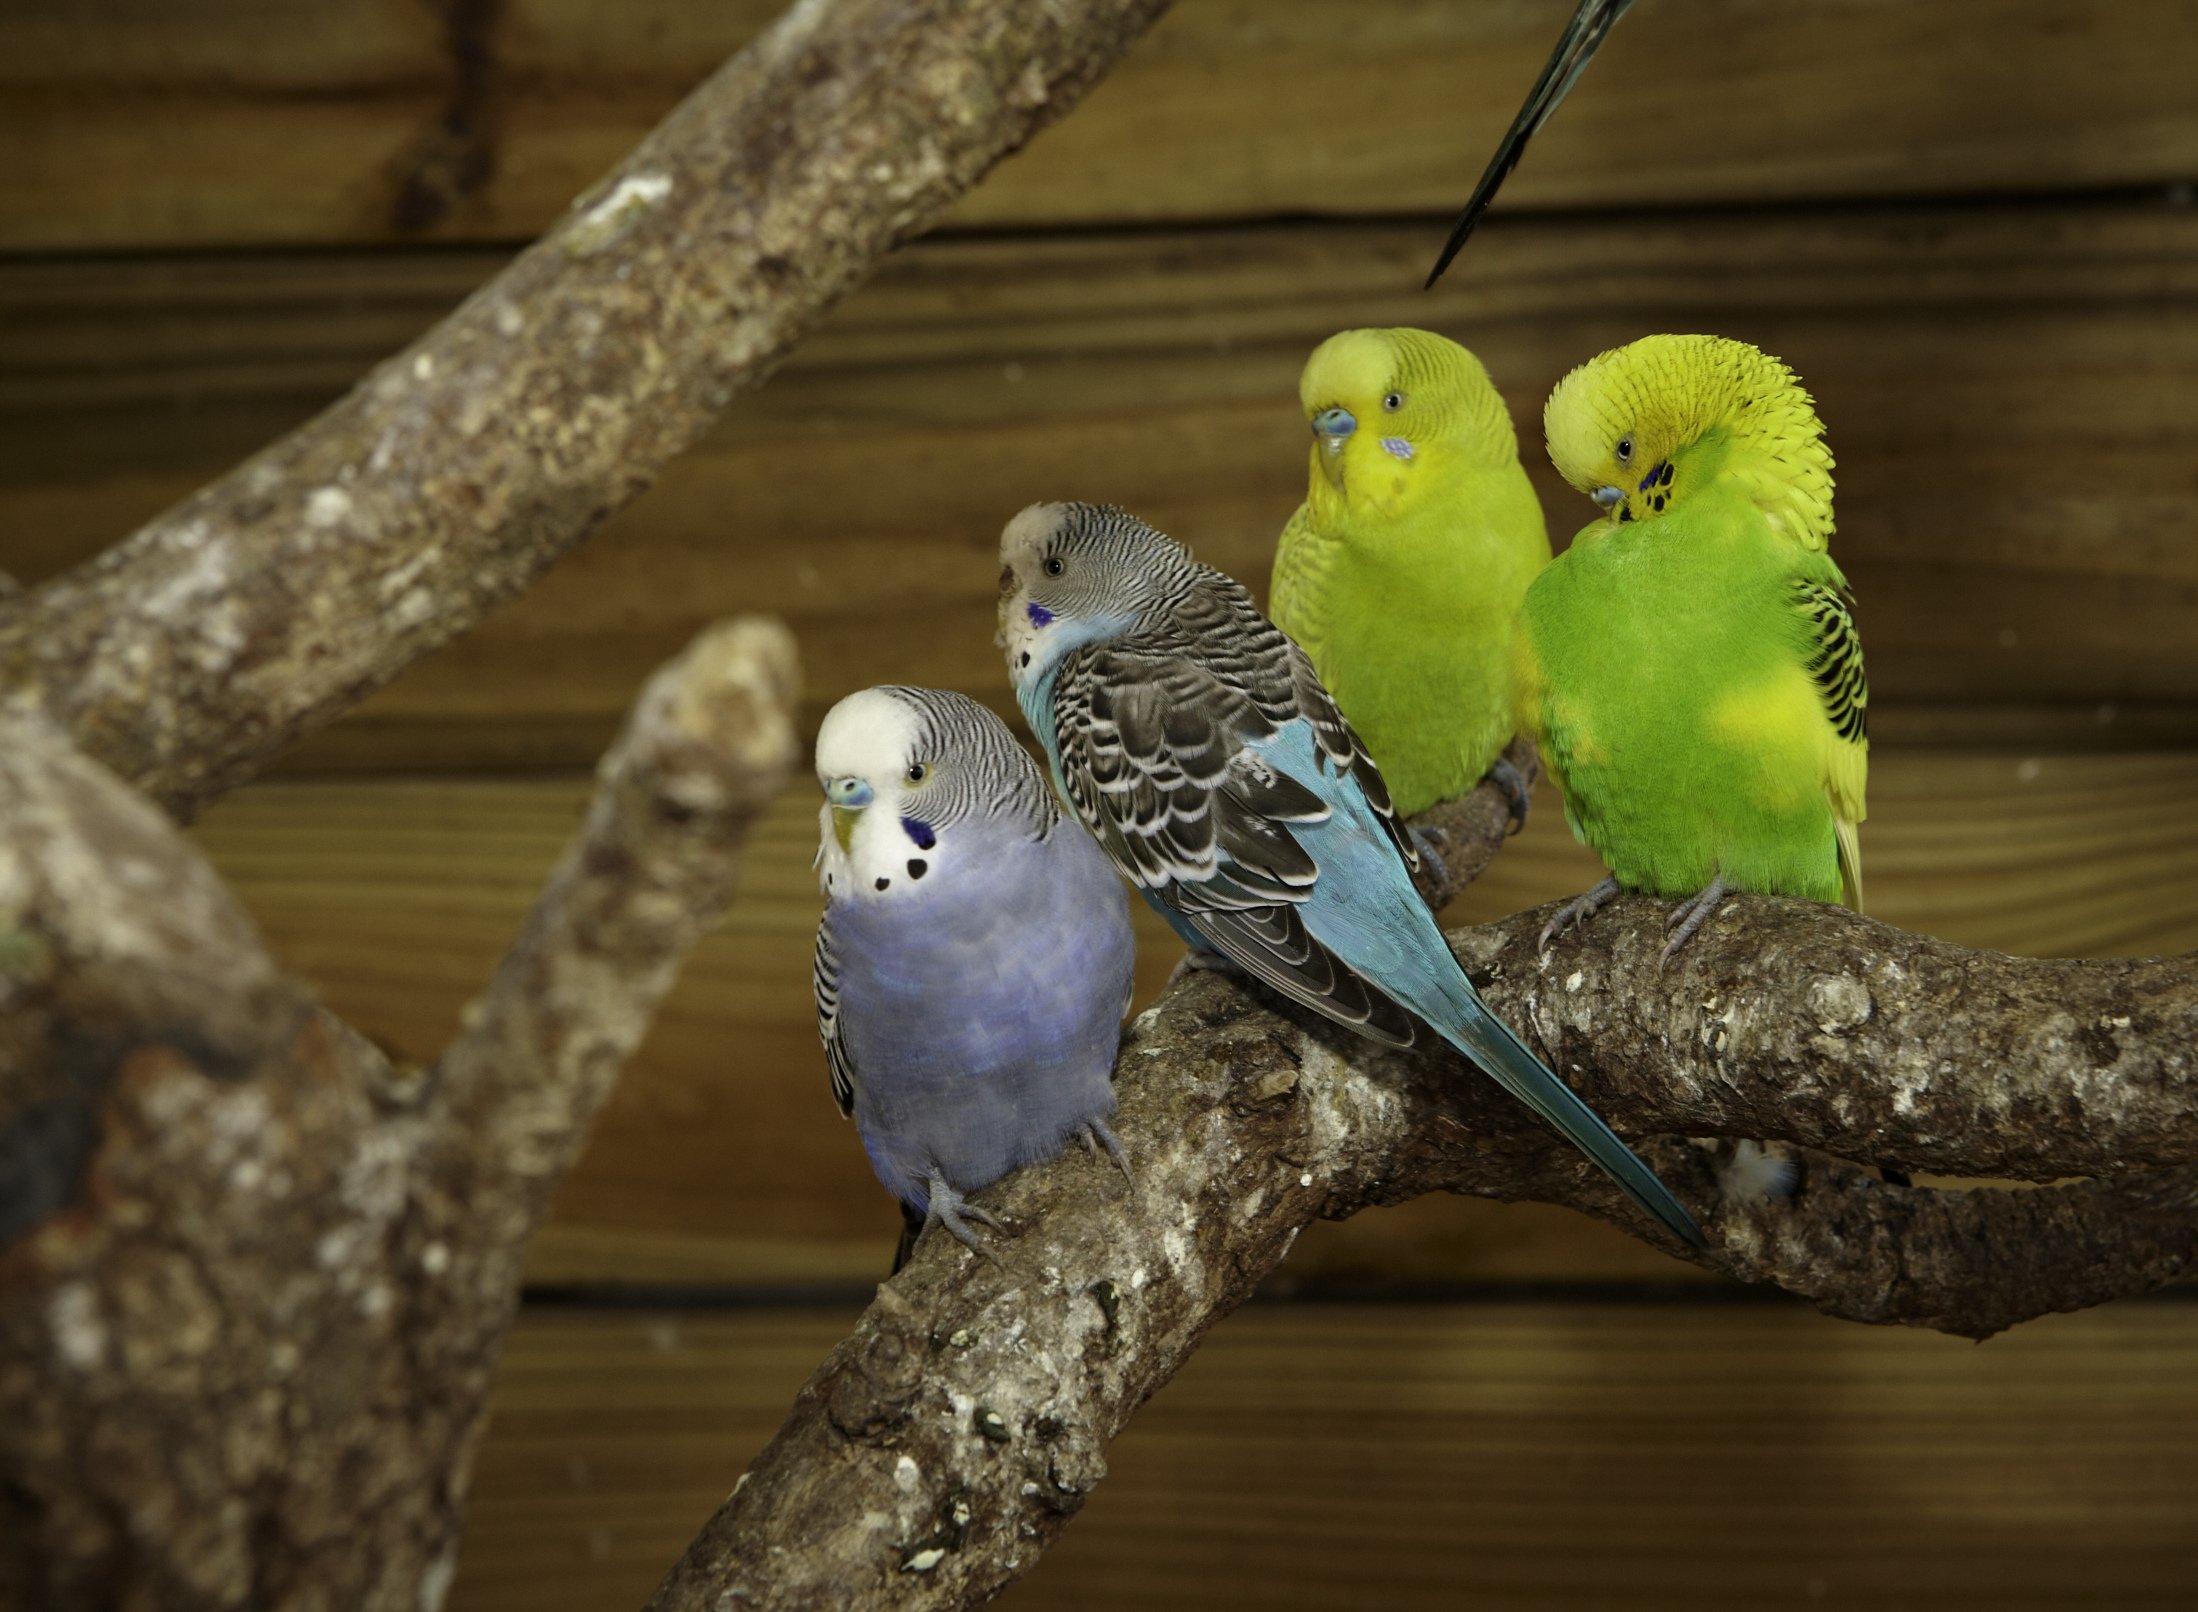 parakeet, Budgie, Parrot, Bird, Tropical,  4 Wallpaper